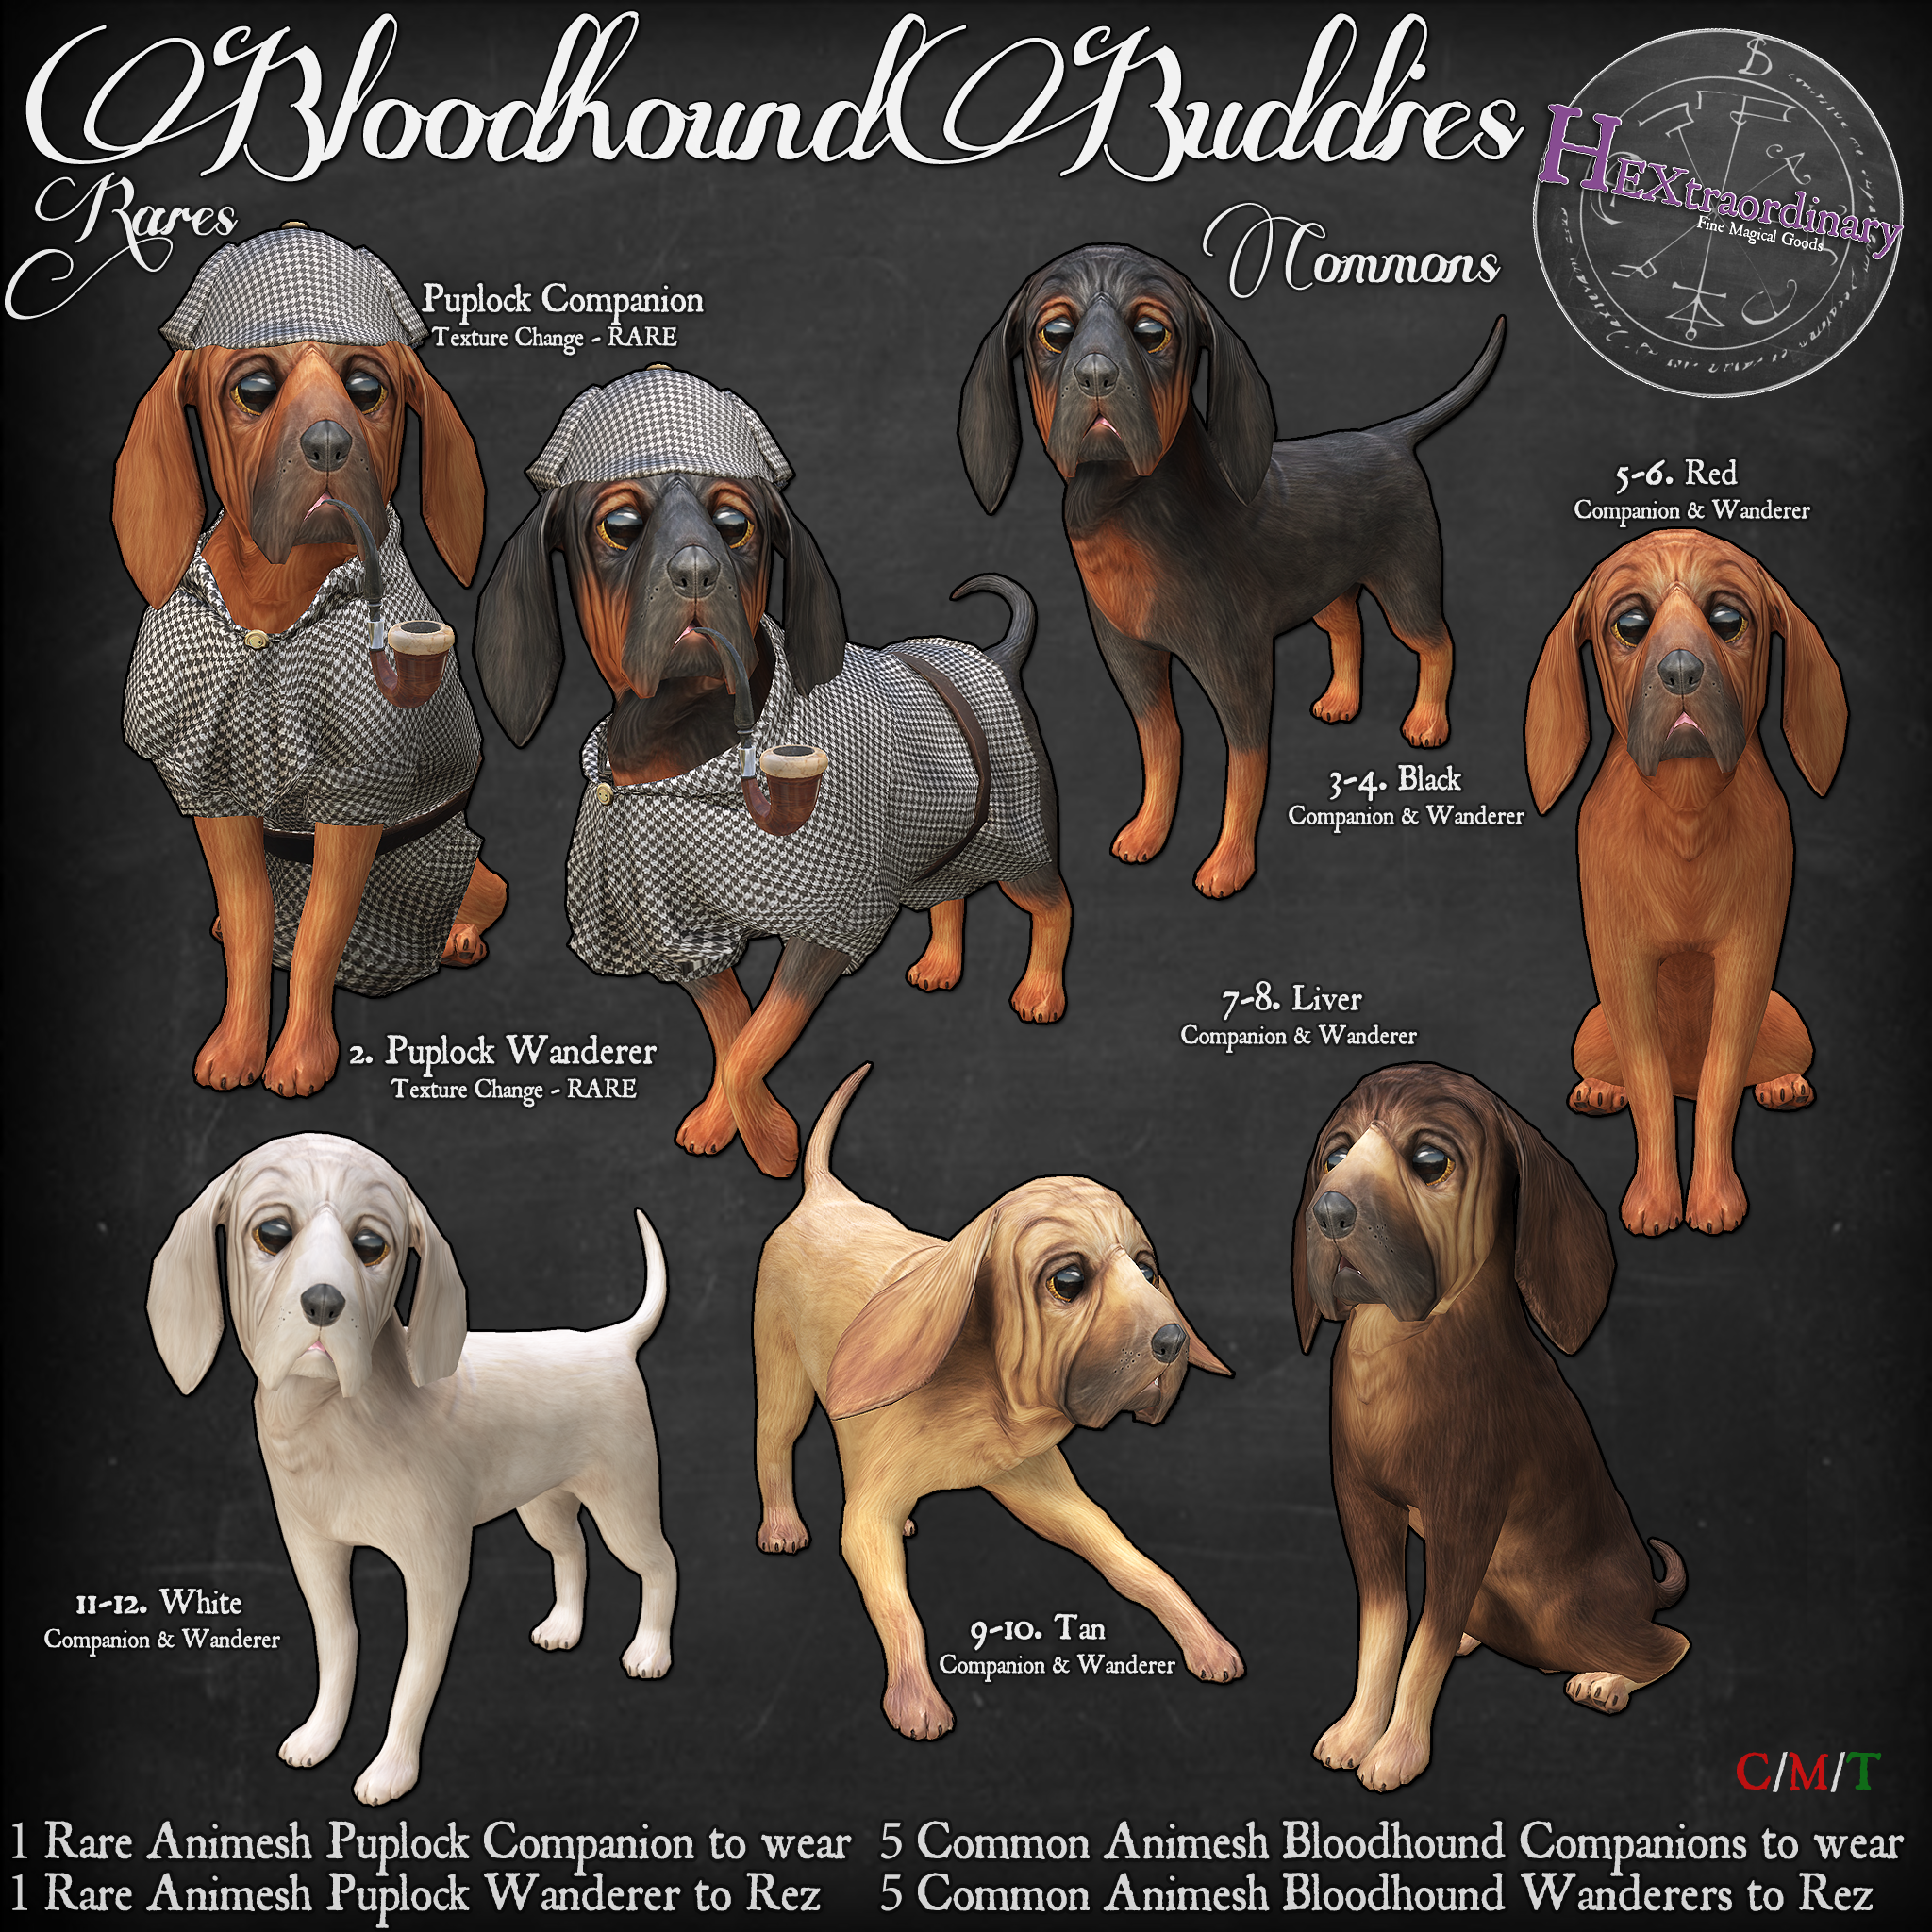 HEXtraordinary – Bloodhound Buddies